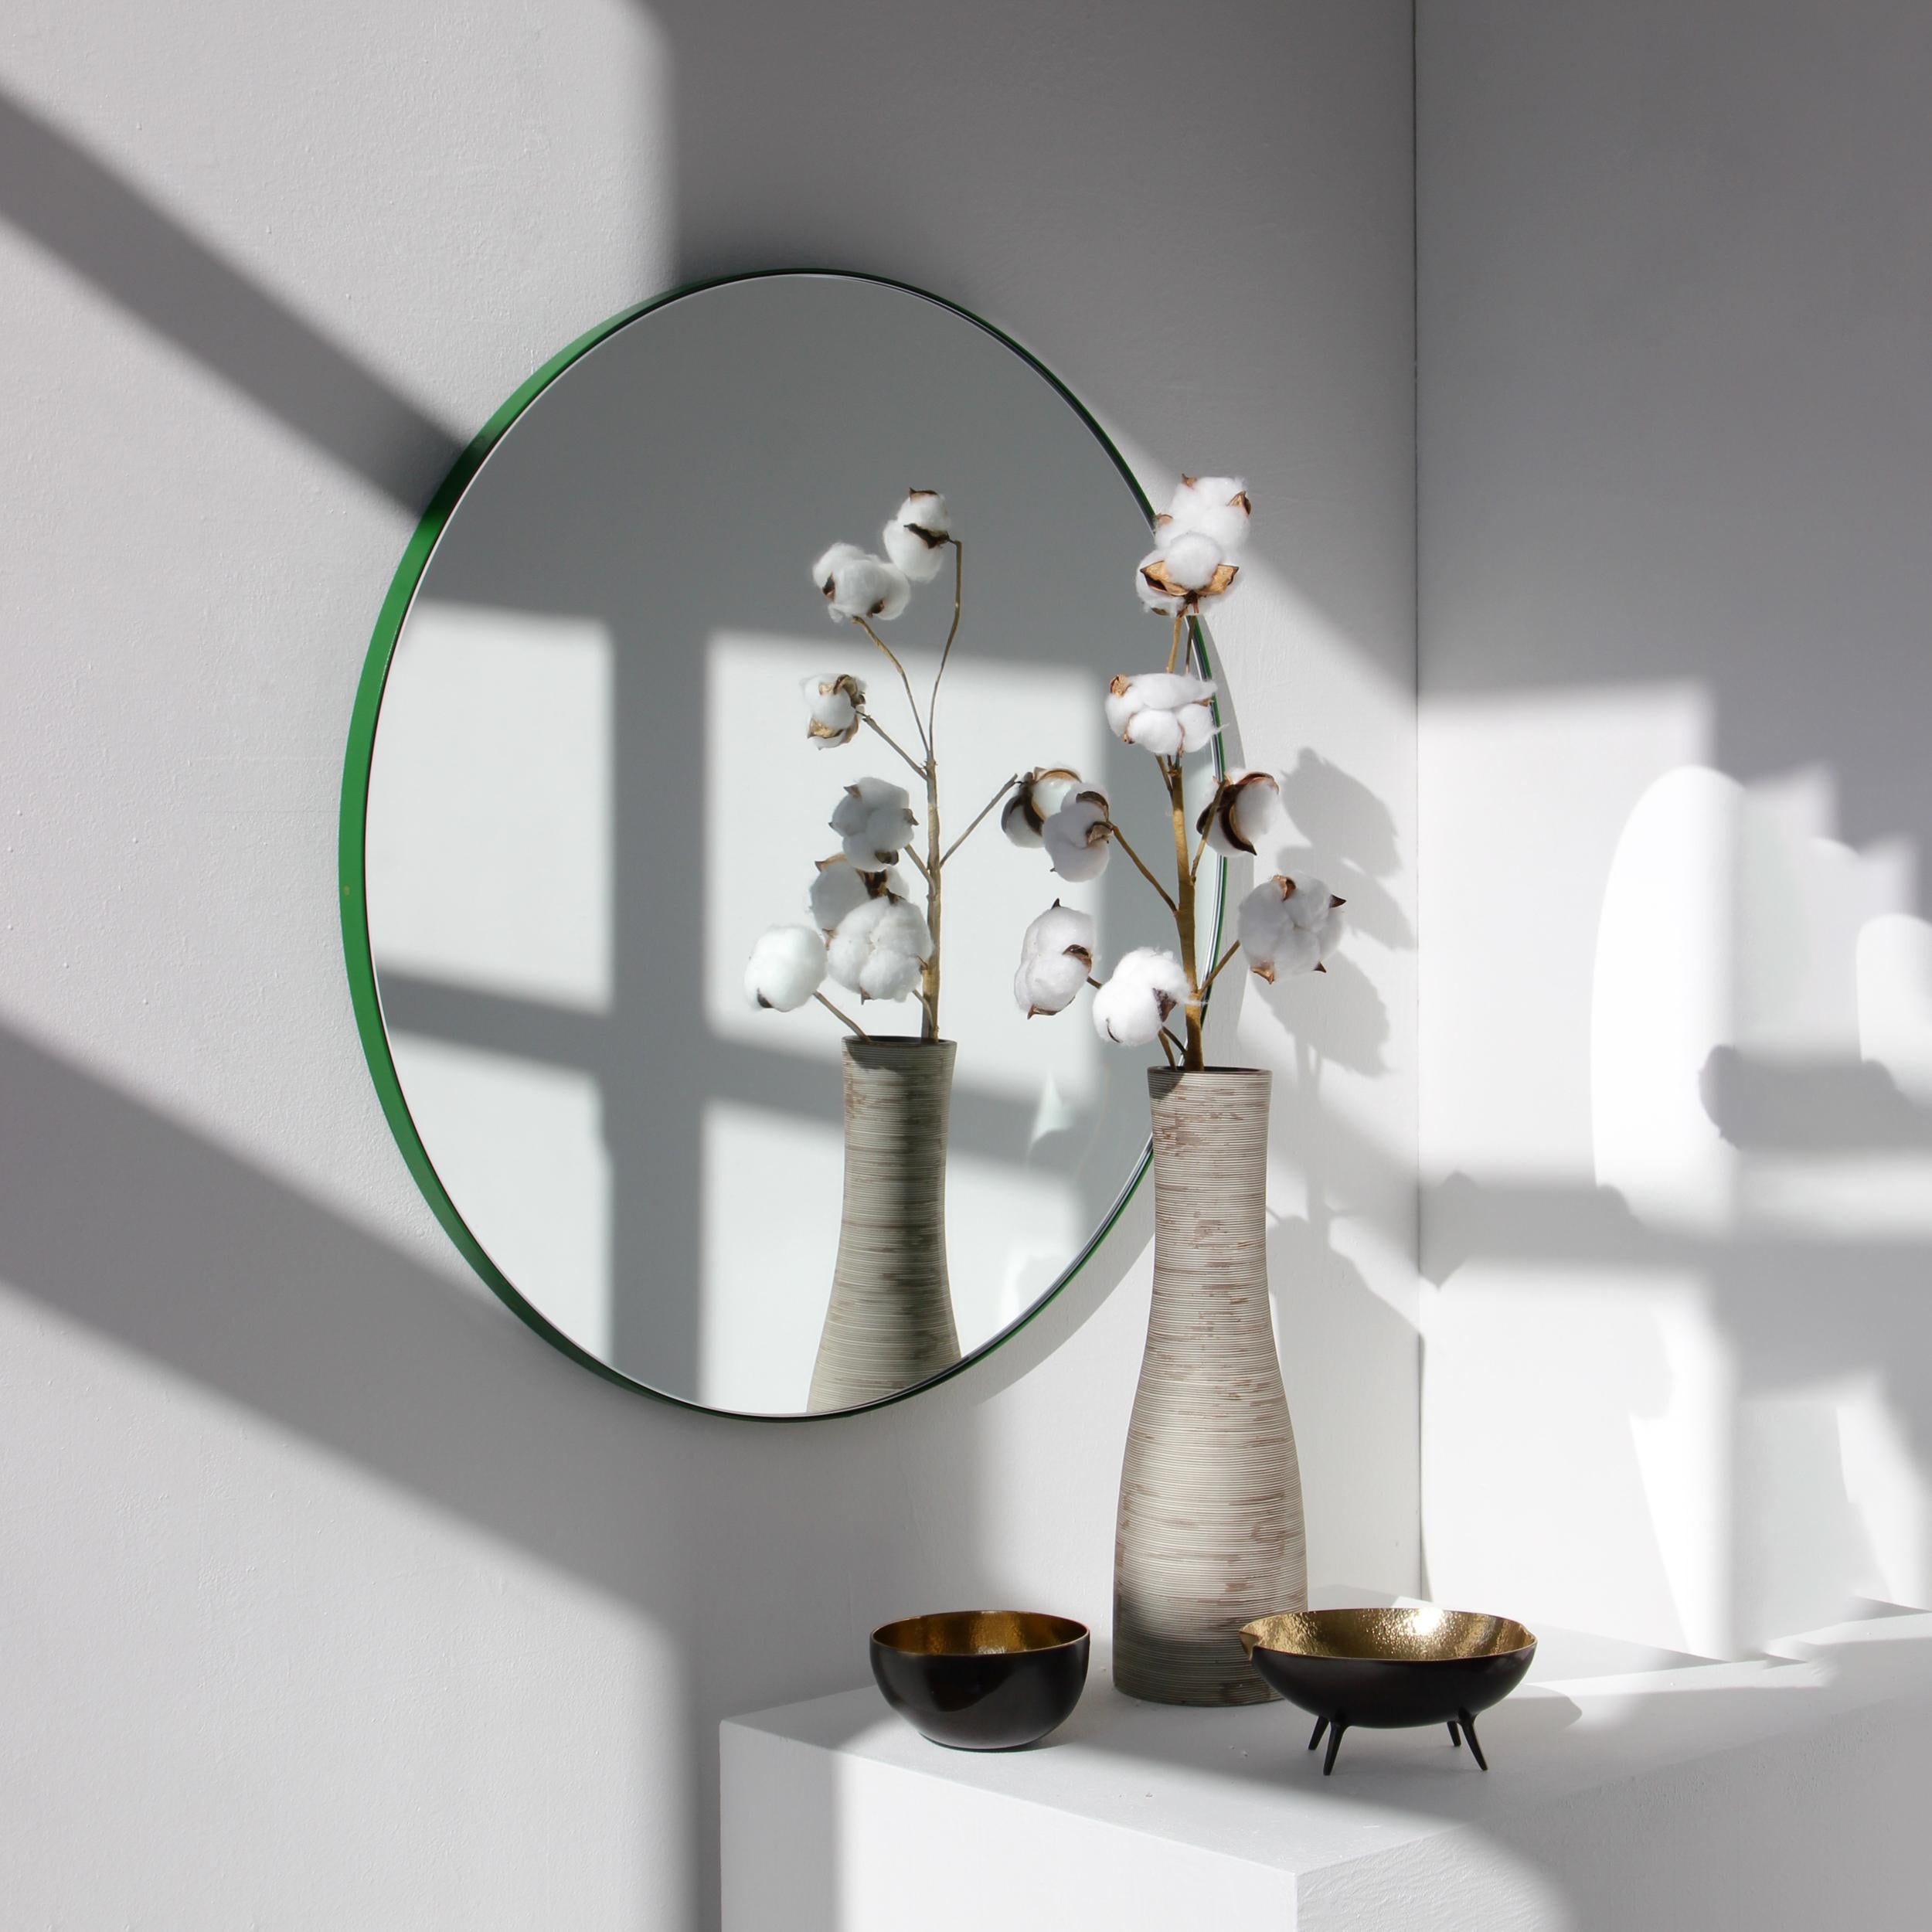 Miroir rond minimaliste avec un cadre vert vif en aluminium peint par poudrage. Conçu et fabriqué à la main à Londres, au Royaume-Uni.

Les miroirs de taille moyenne, grande et extra-large (60, 80 et 100 cm) sont équipés d'un ingénieux système de